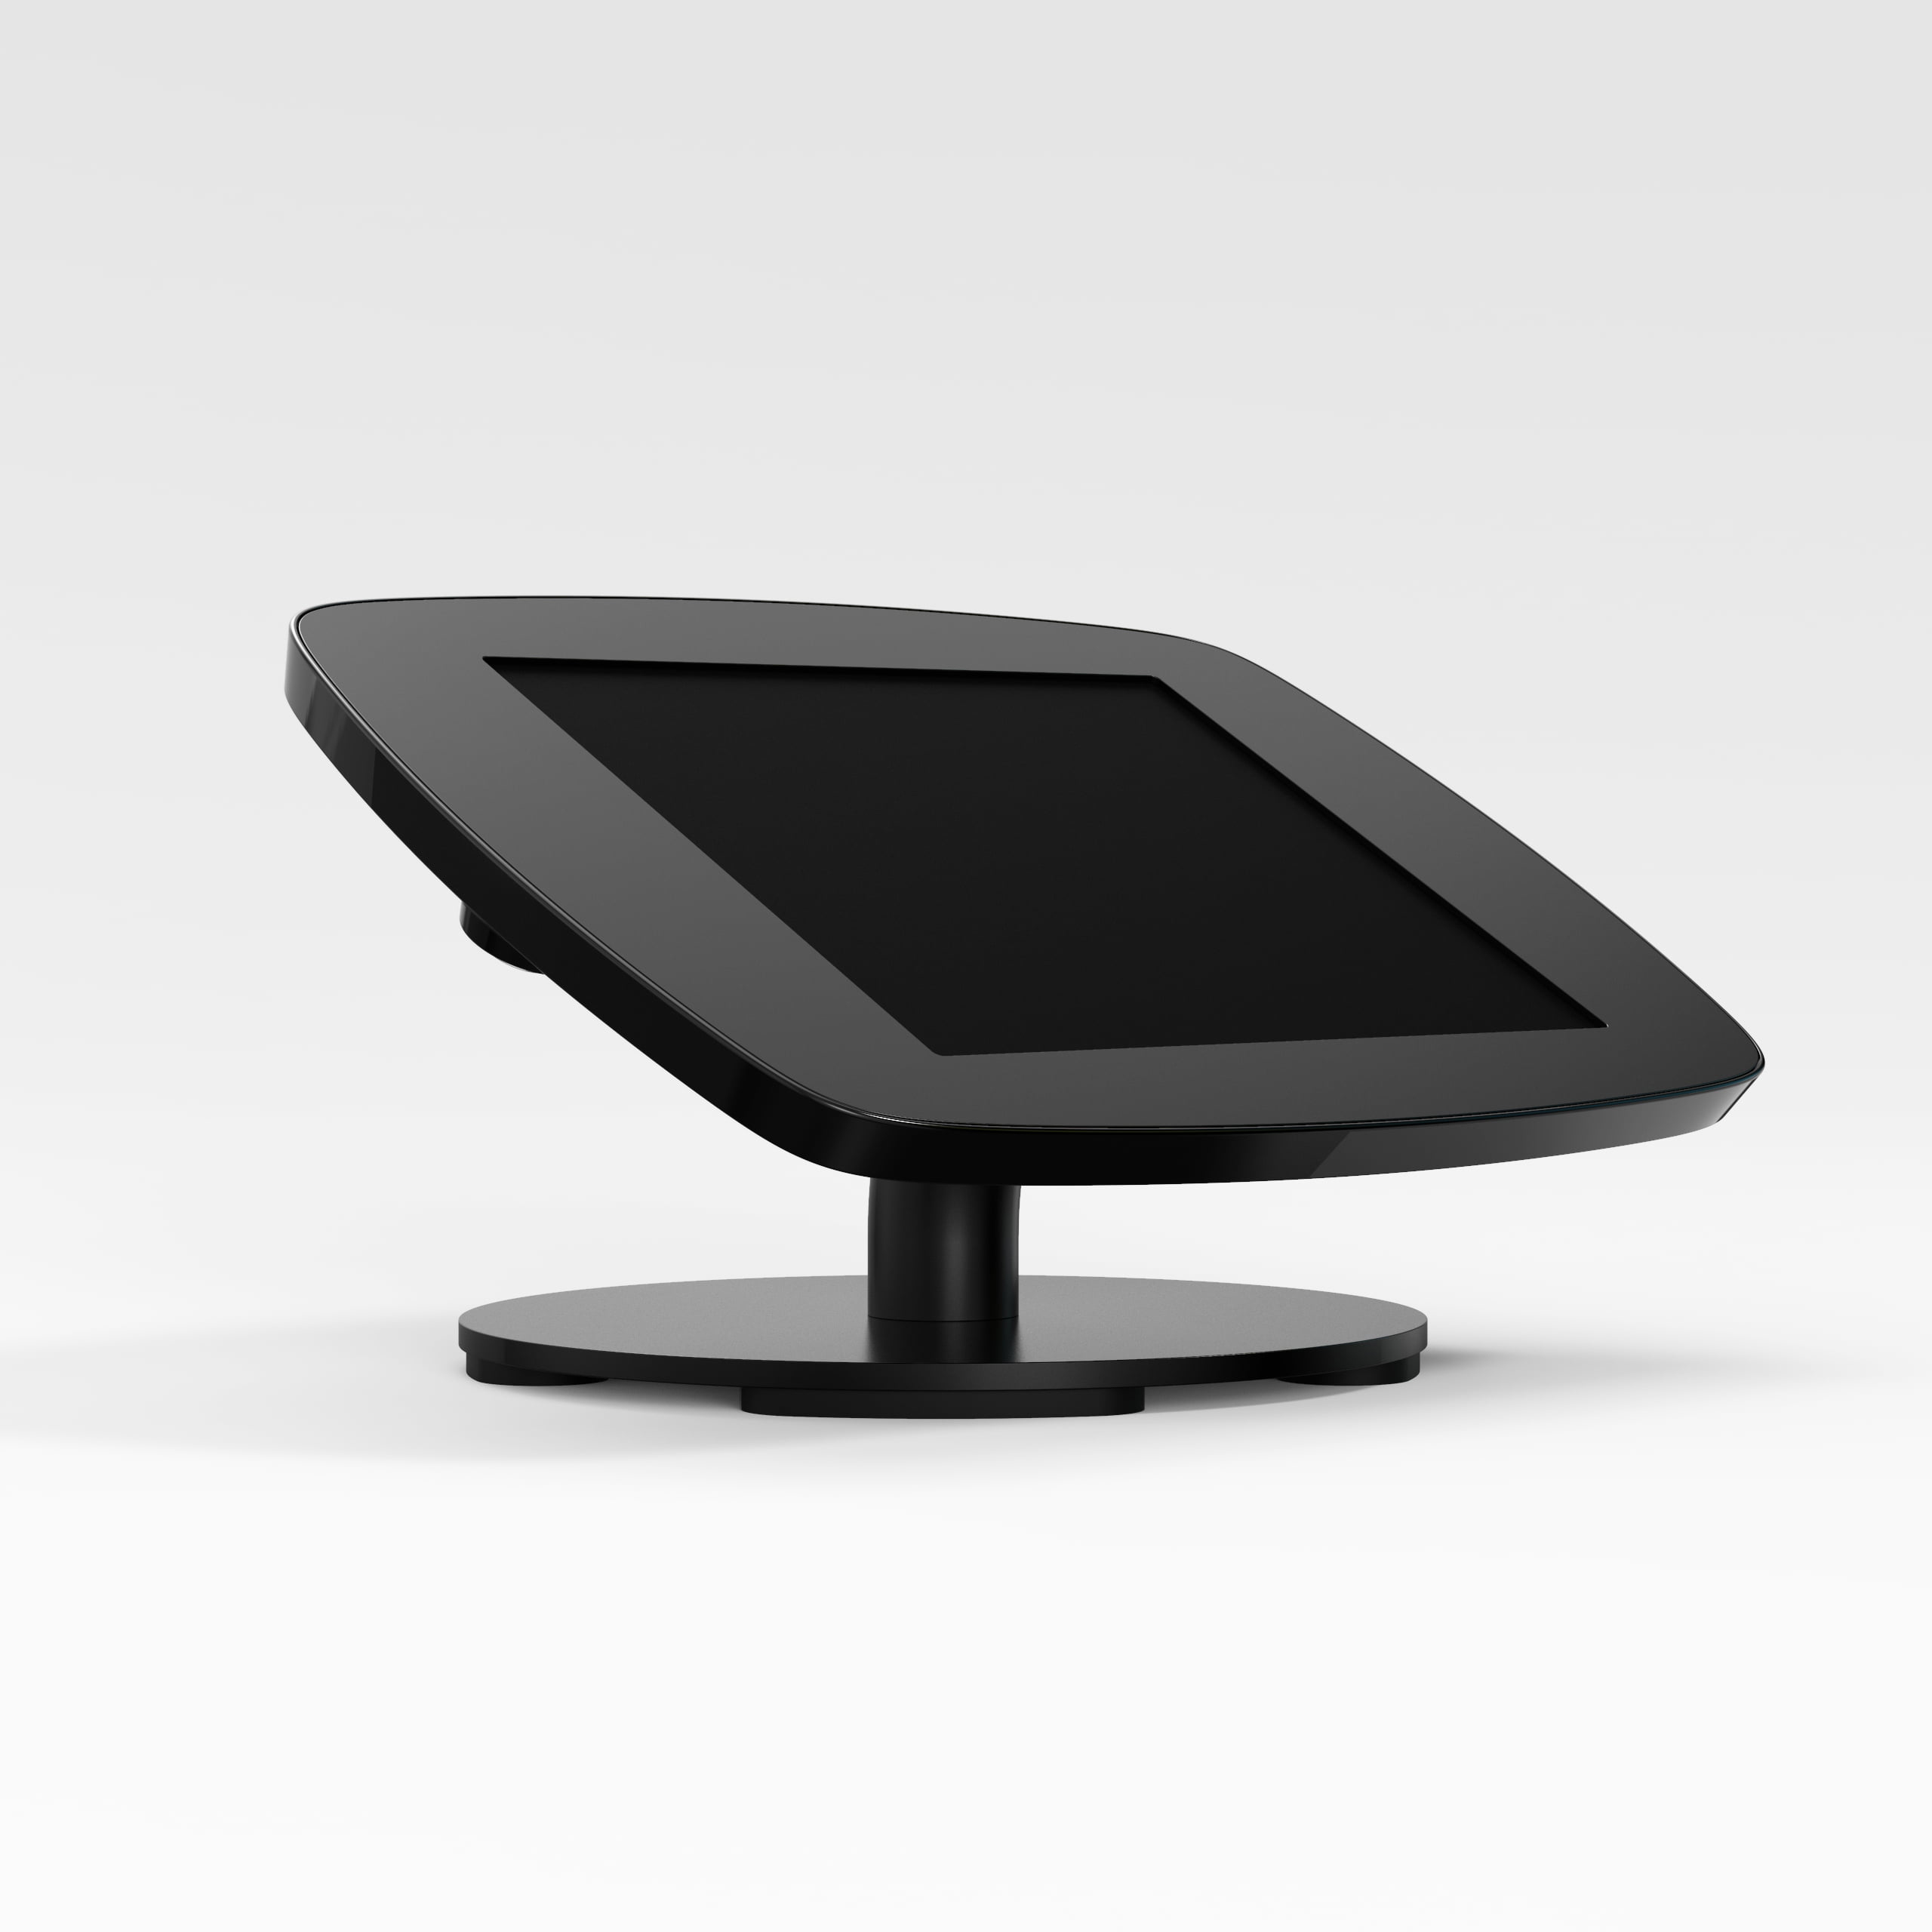 Bouncepad Counter supporto antifurto per tablet 25,6 cm [10.1] Nero (COUNTDBLKCLOSEDCAM/CLOSEDHOME TA4)